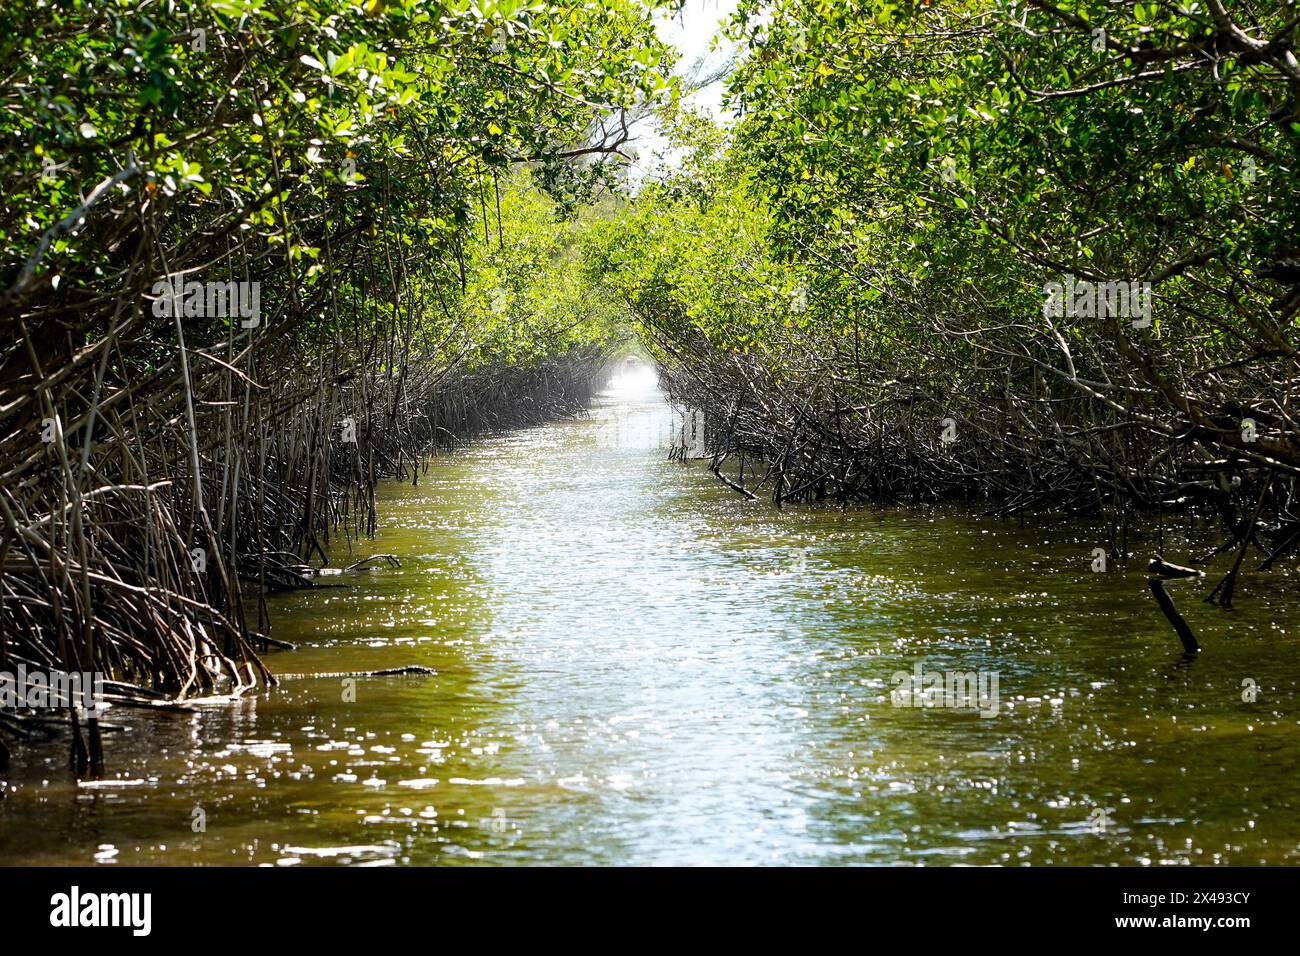 17.04.24, Everglades City, Florida, Vereinigte Staaten Ansicht von Mangroven in den Florida Everglades von einem Luftschiff aus gesehen, Everglade City, Florida, Mittwoch, 17. April, 2024. Foto von Jennifer Graylock-Graylock.com 917-519-7666 Stockfoto